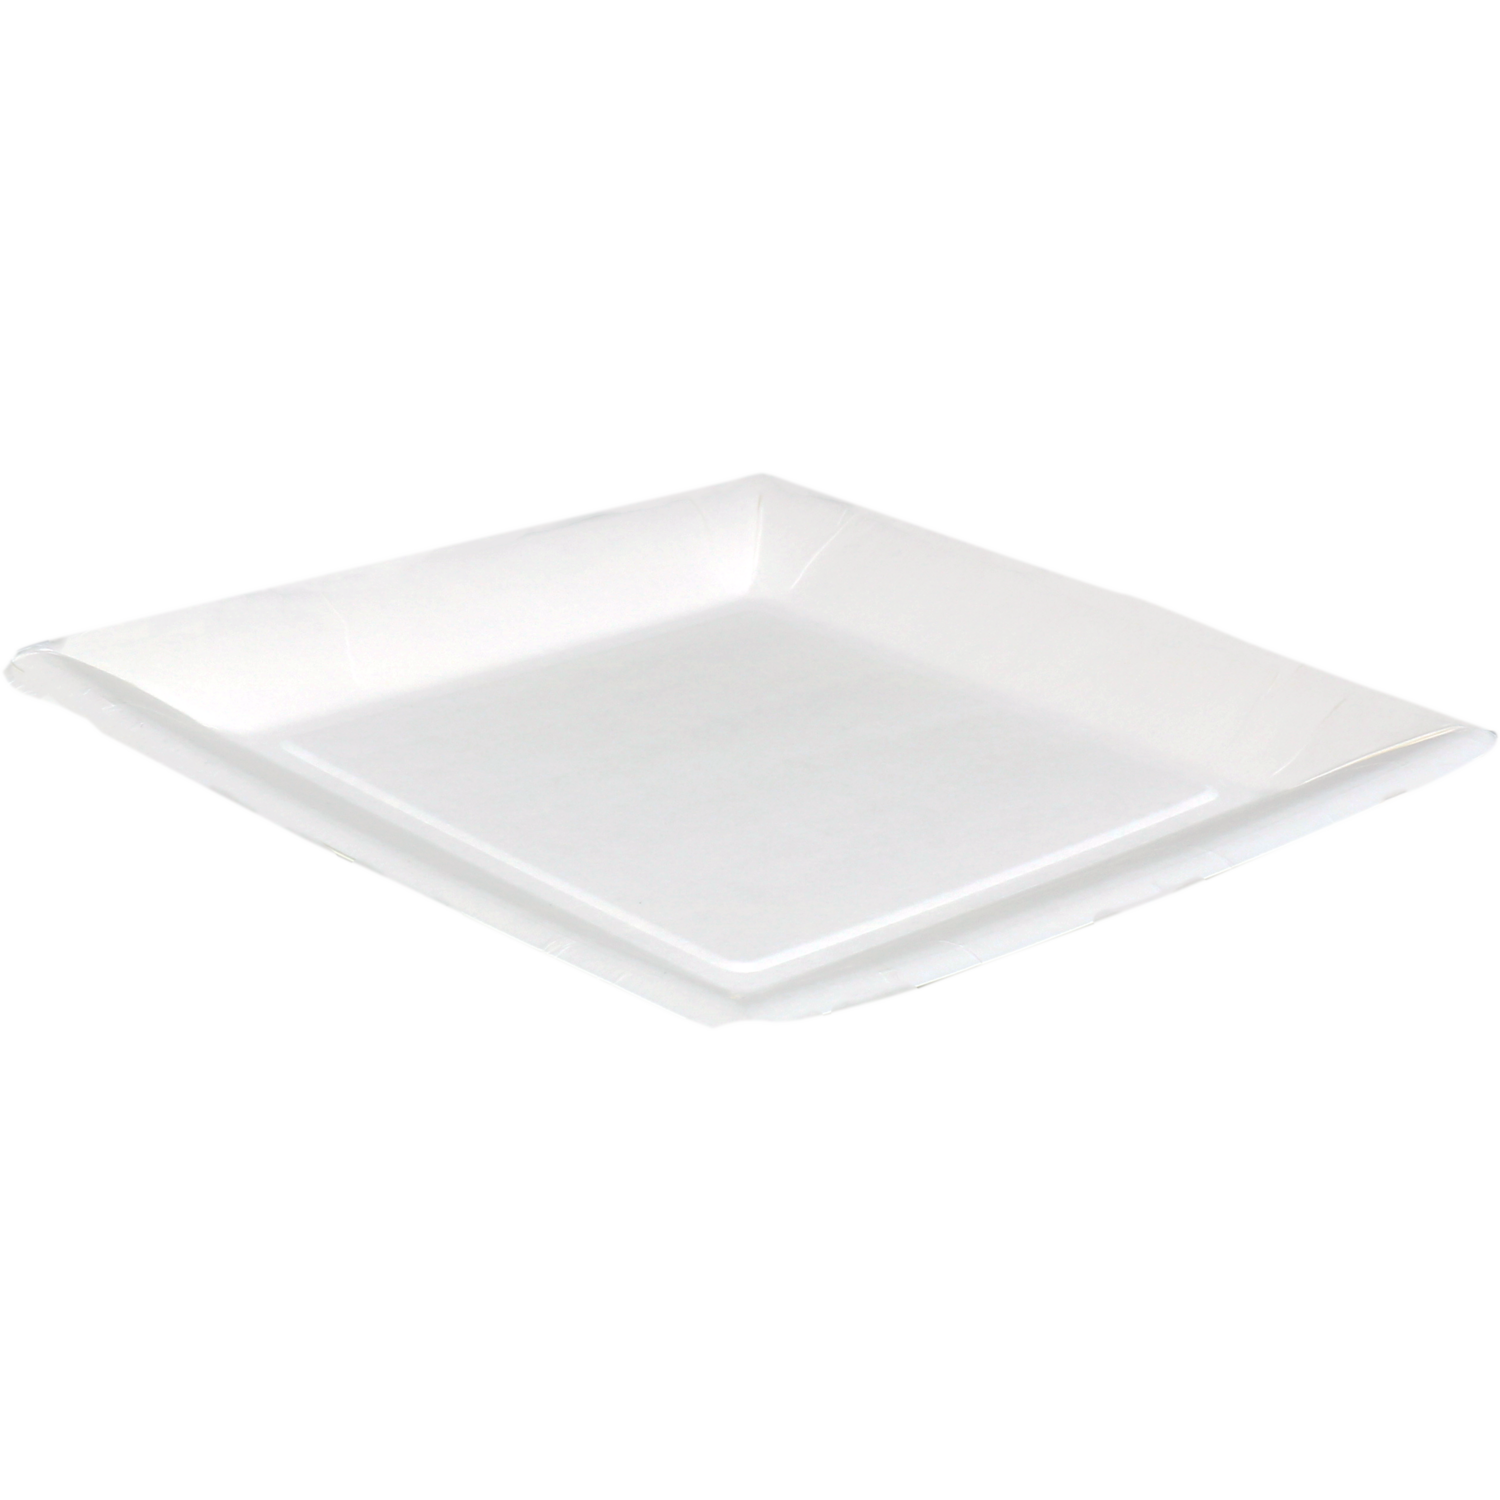 Biodore Assiette, carré, non compartimentée, carton, 23x23cm, blanc 1